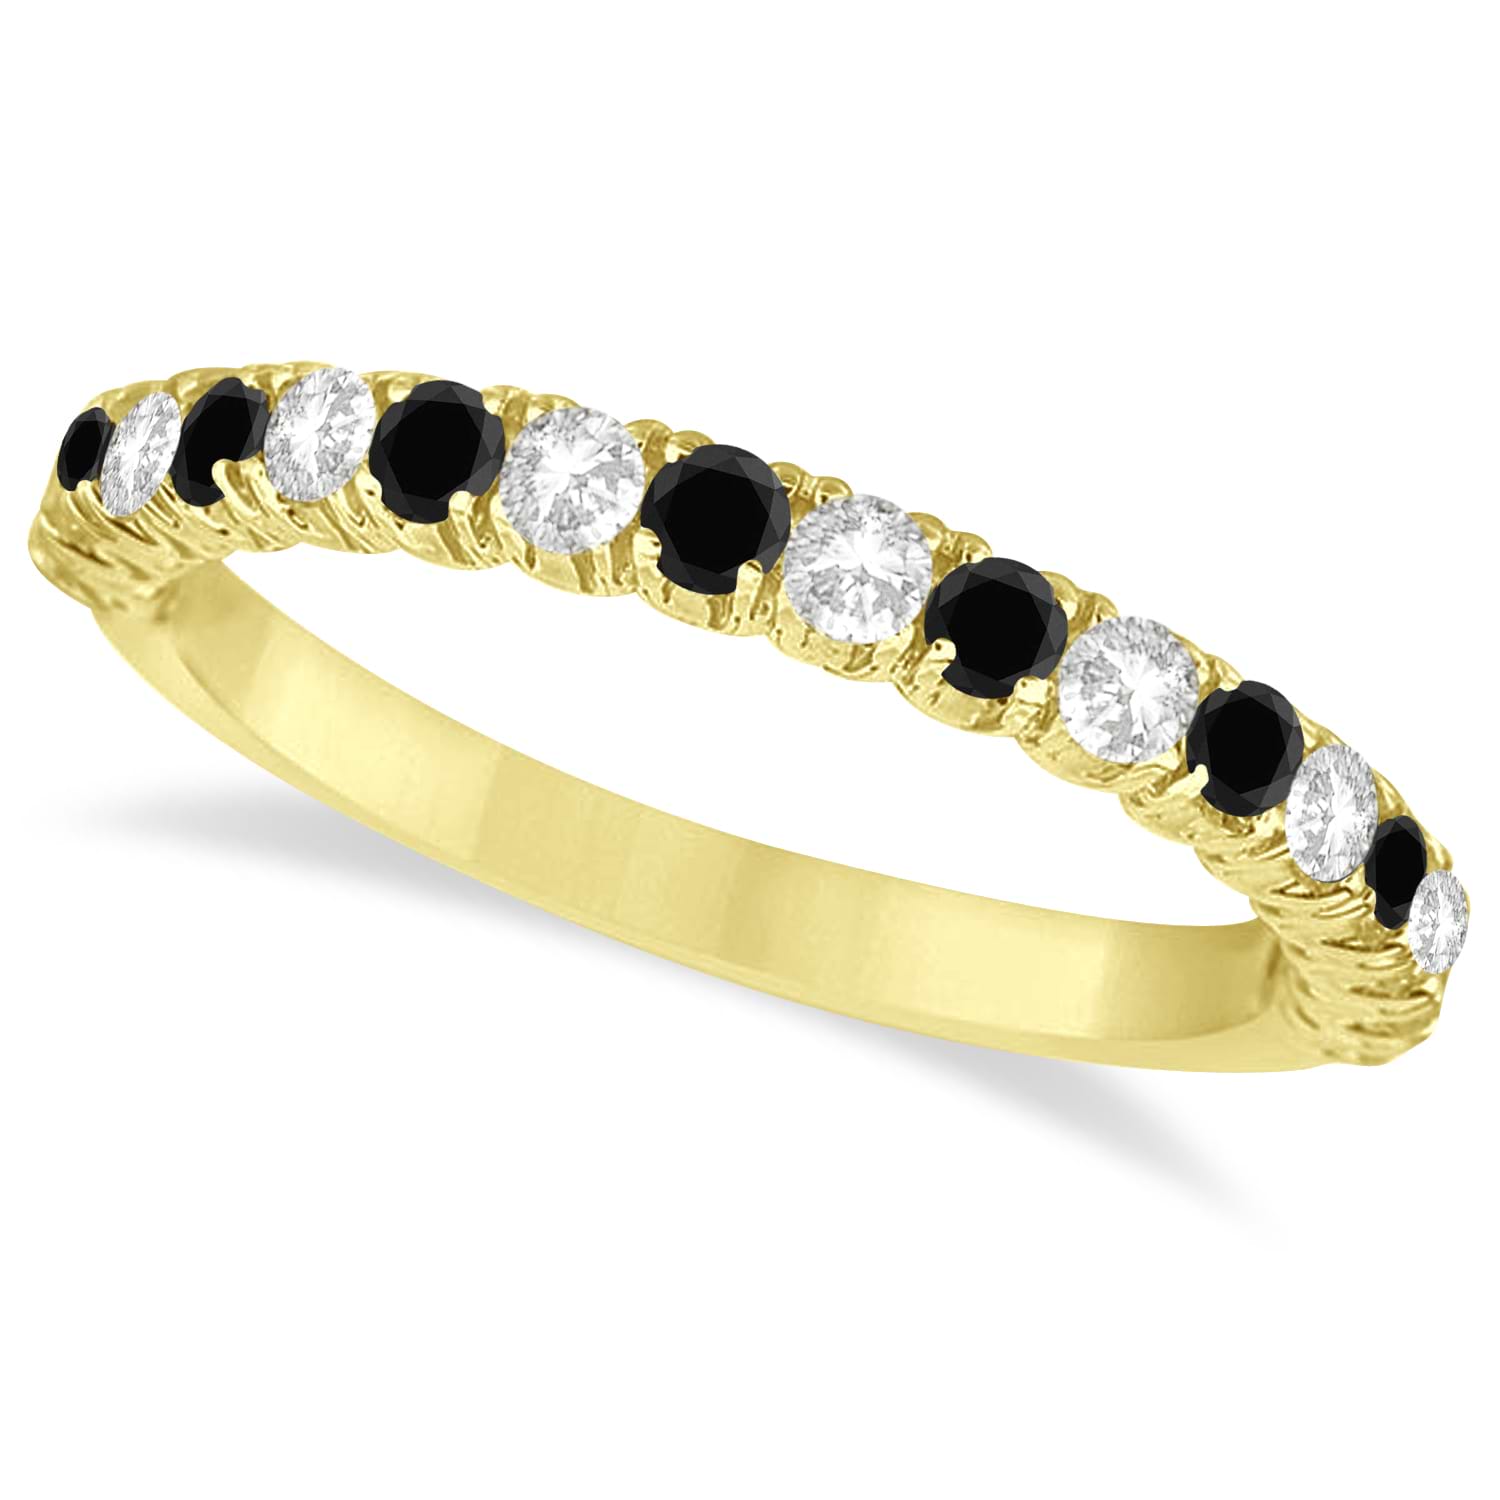 Black & White Diamond Wedding Band Anniversary Ring in 14k Yellow Gold (0.75ct)